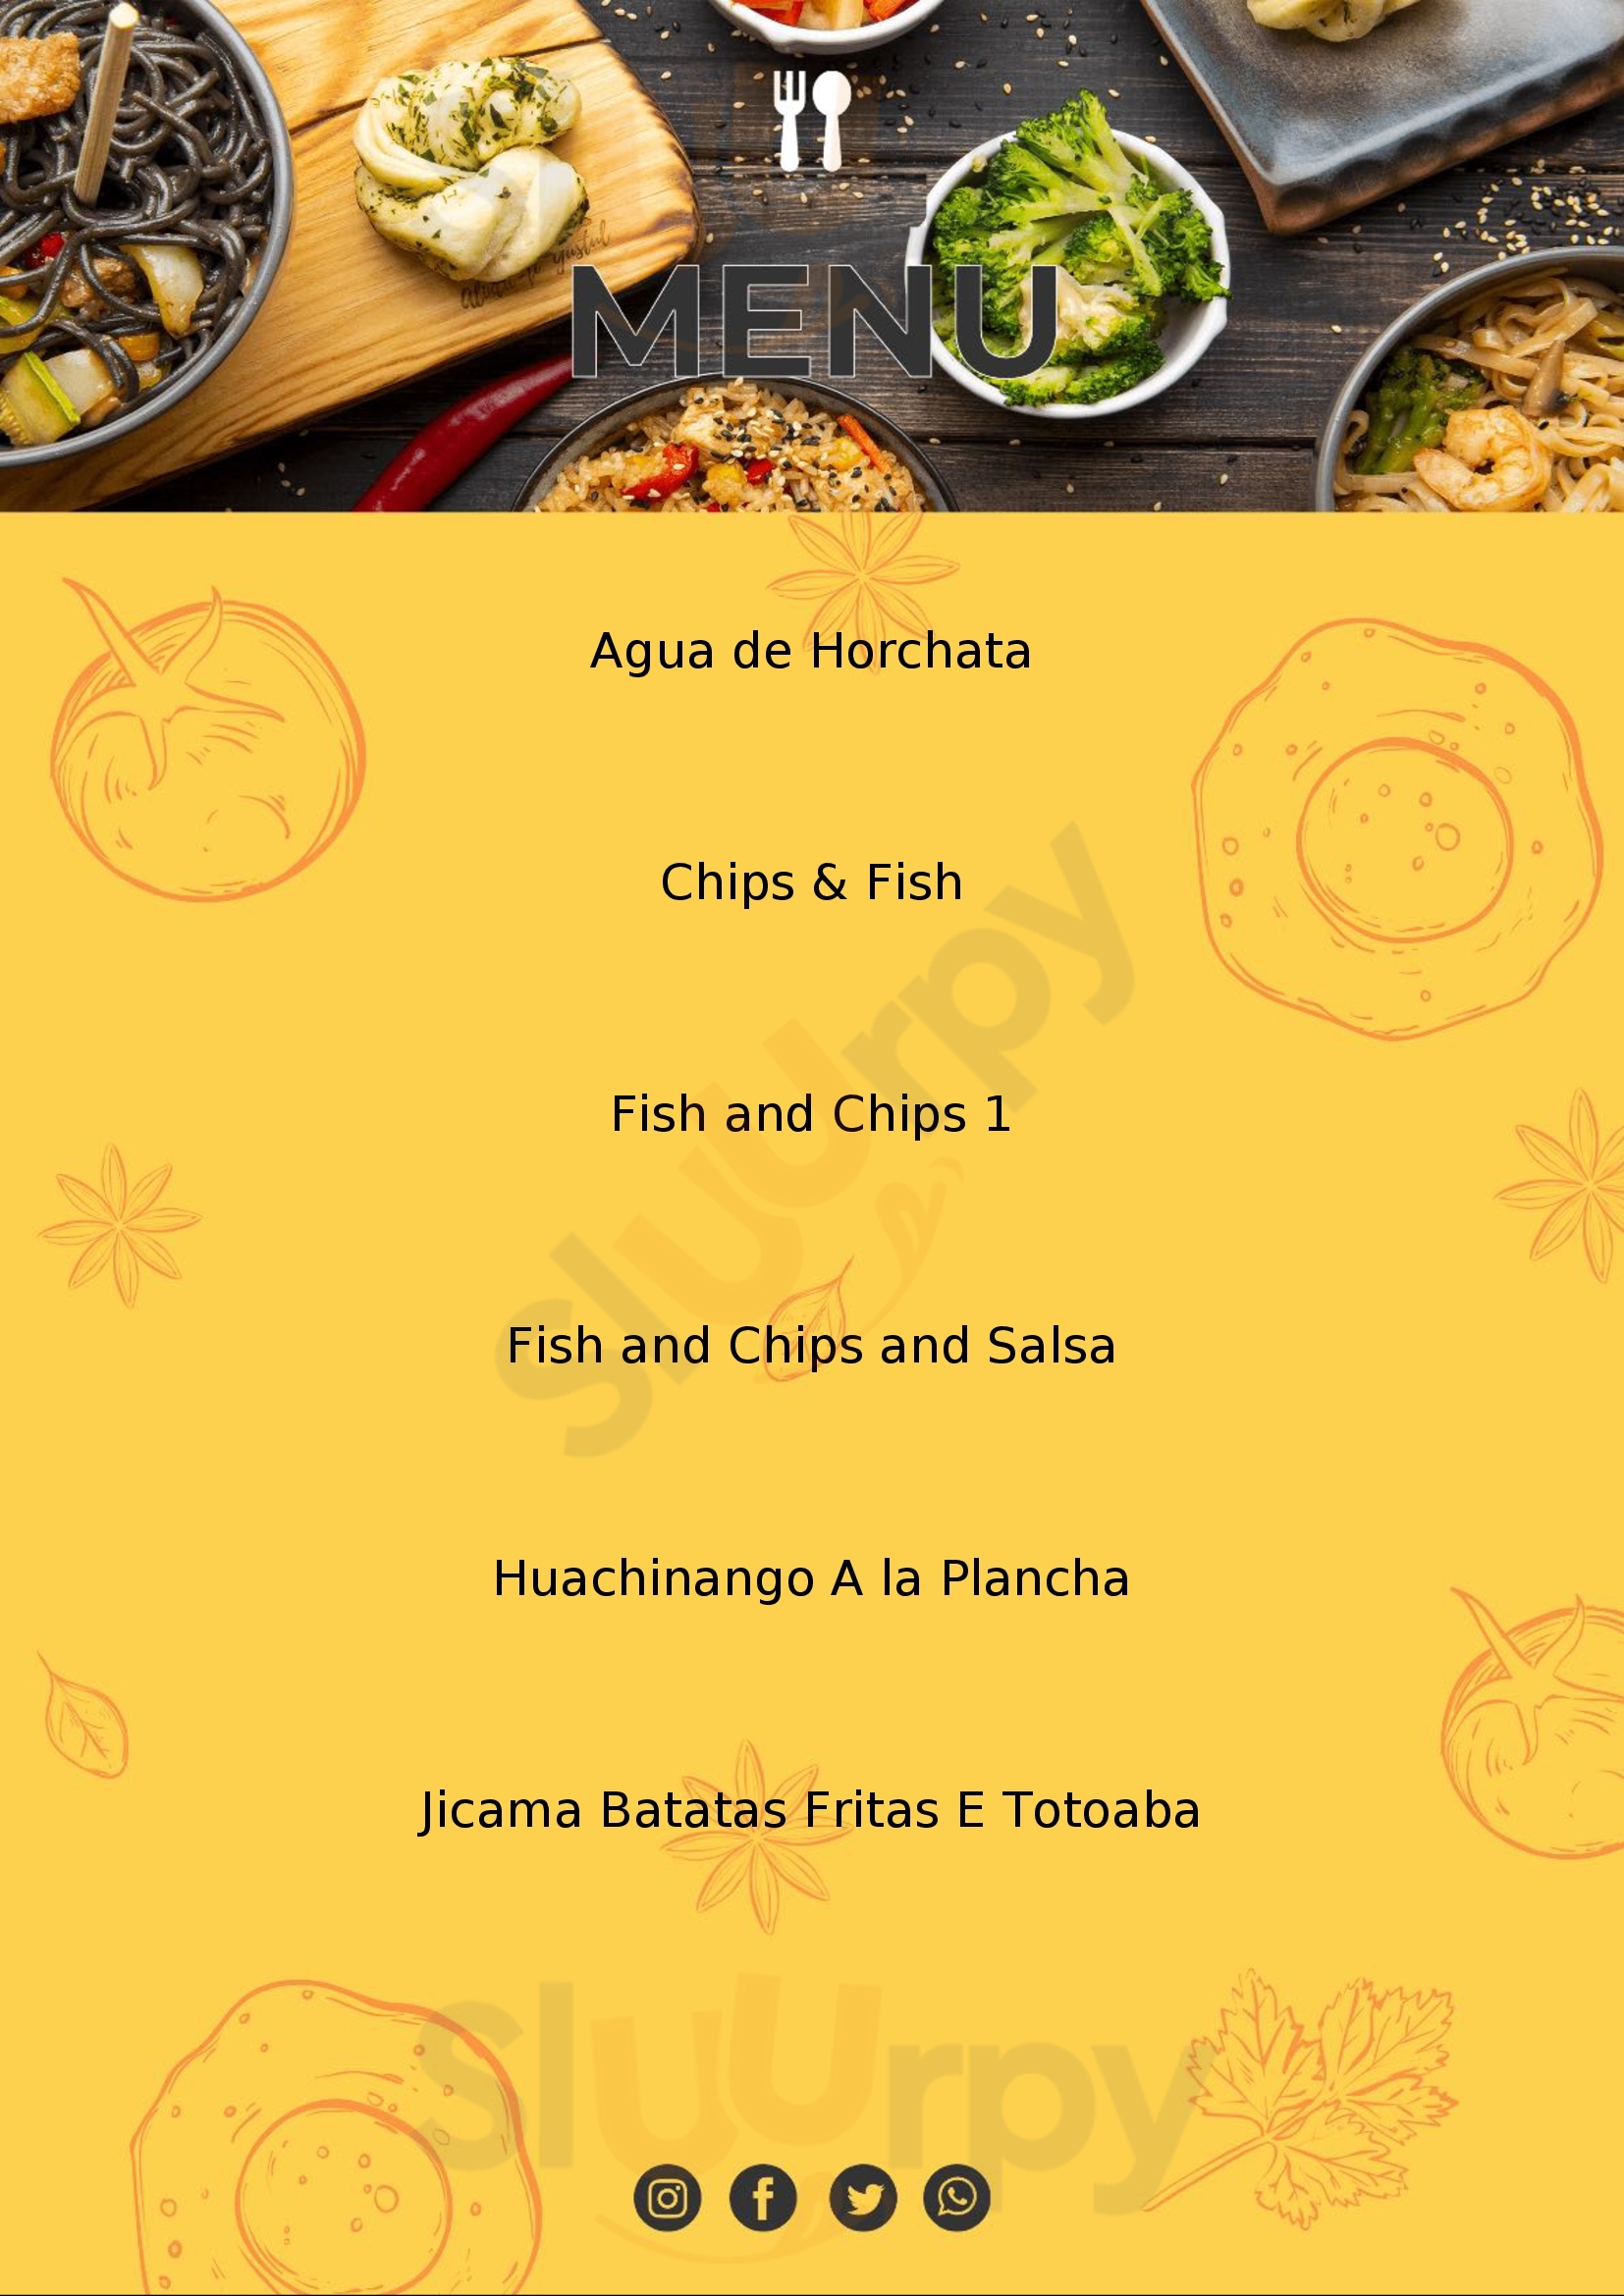 Toto Frito Fish & Chips - Suc. El Triunfo El Triunfo Menu - 1